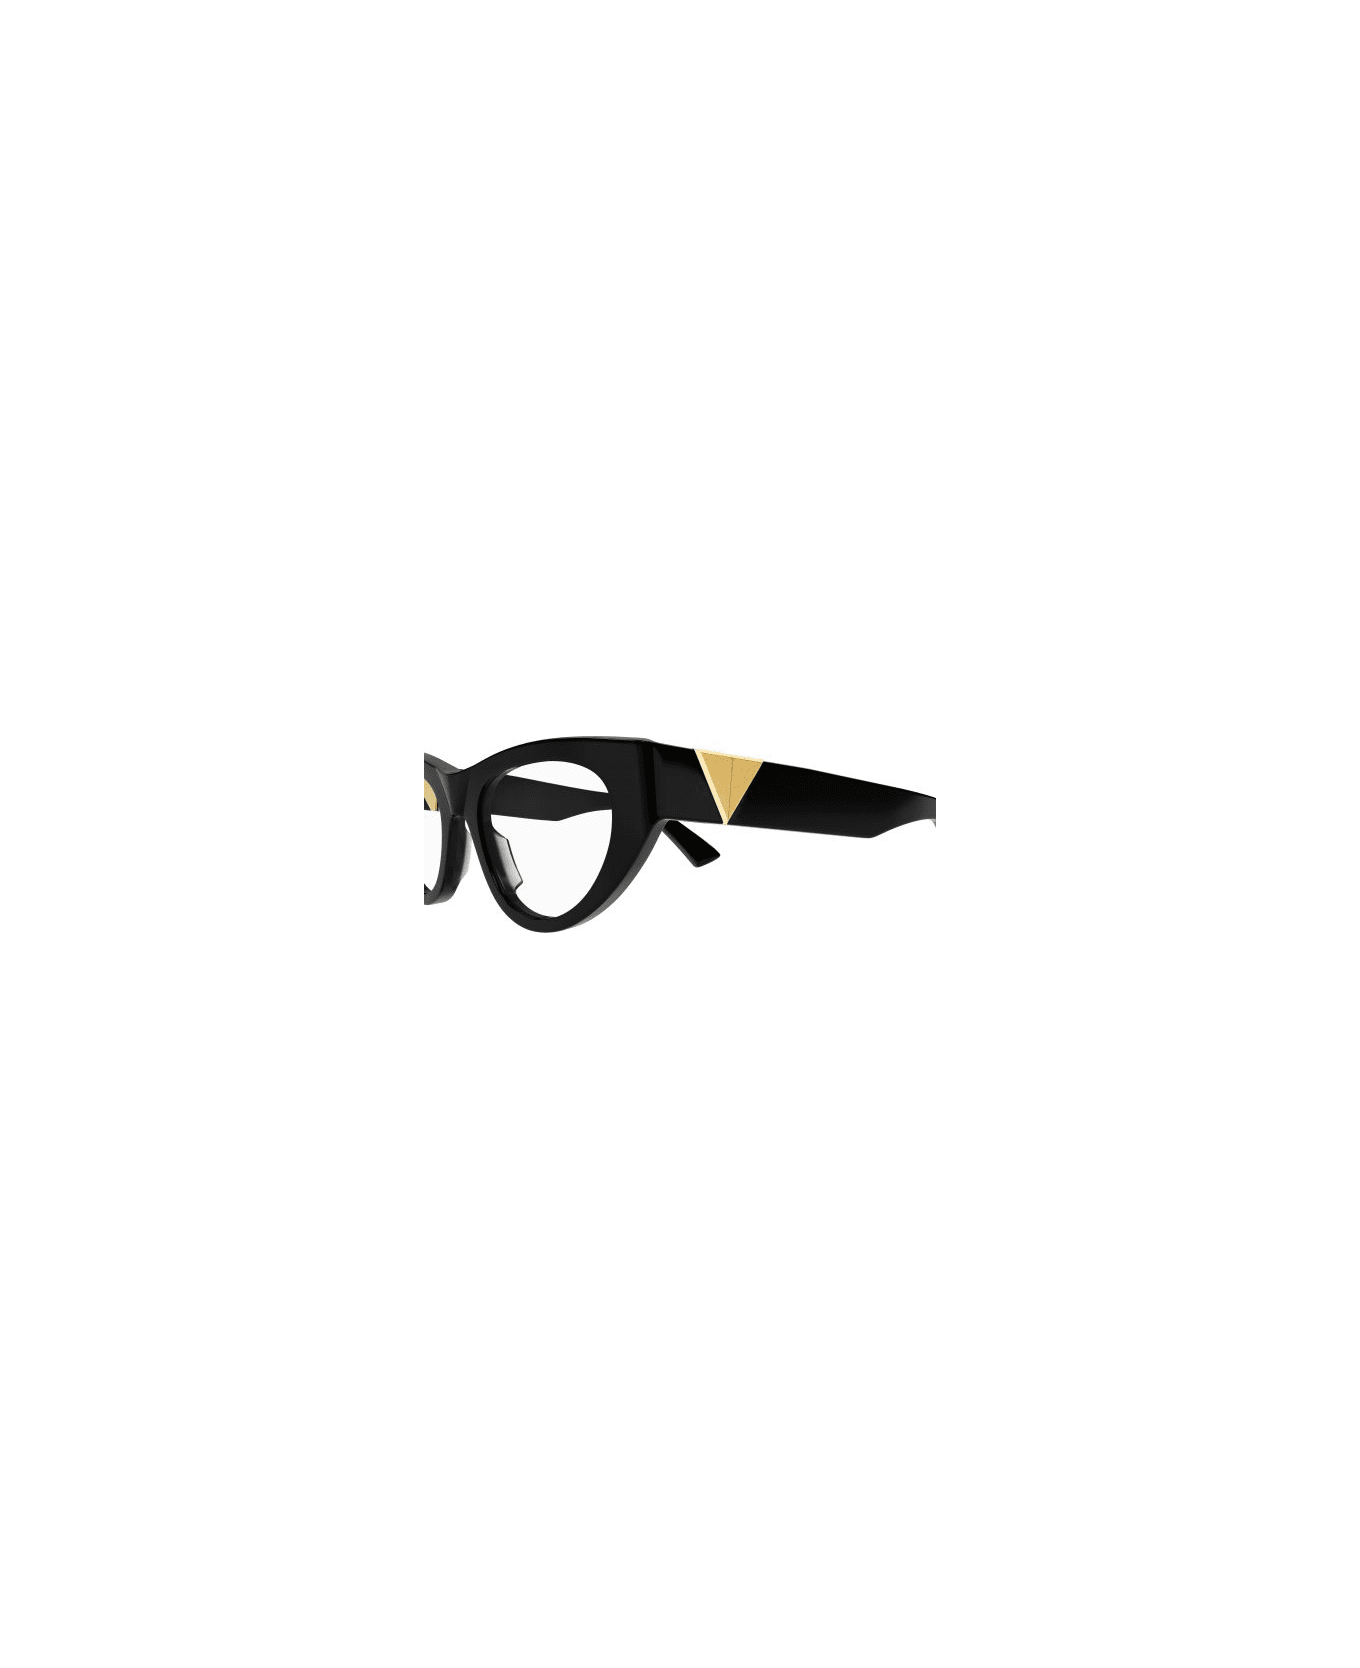 Bottega Veneta Eyewear 1e4l4id0a Glasses - 001 black black transpare